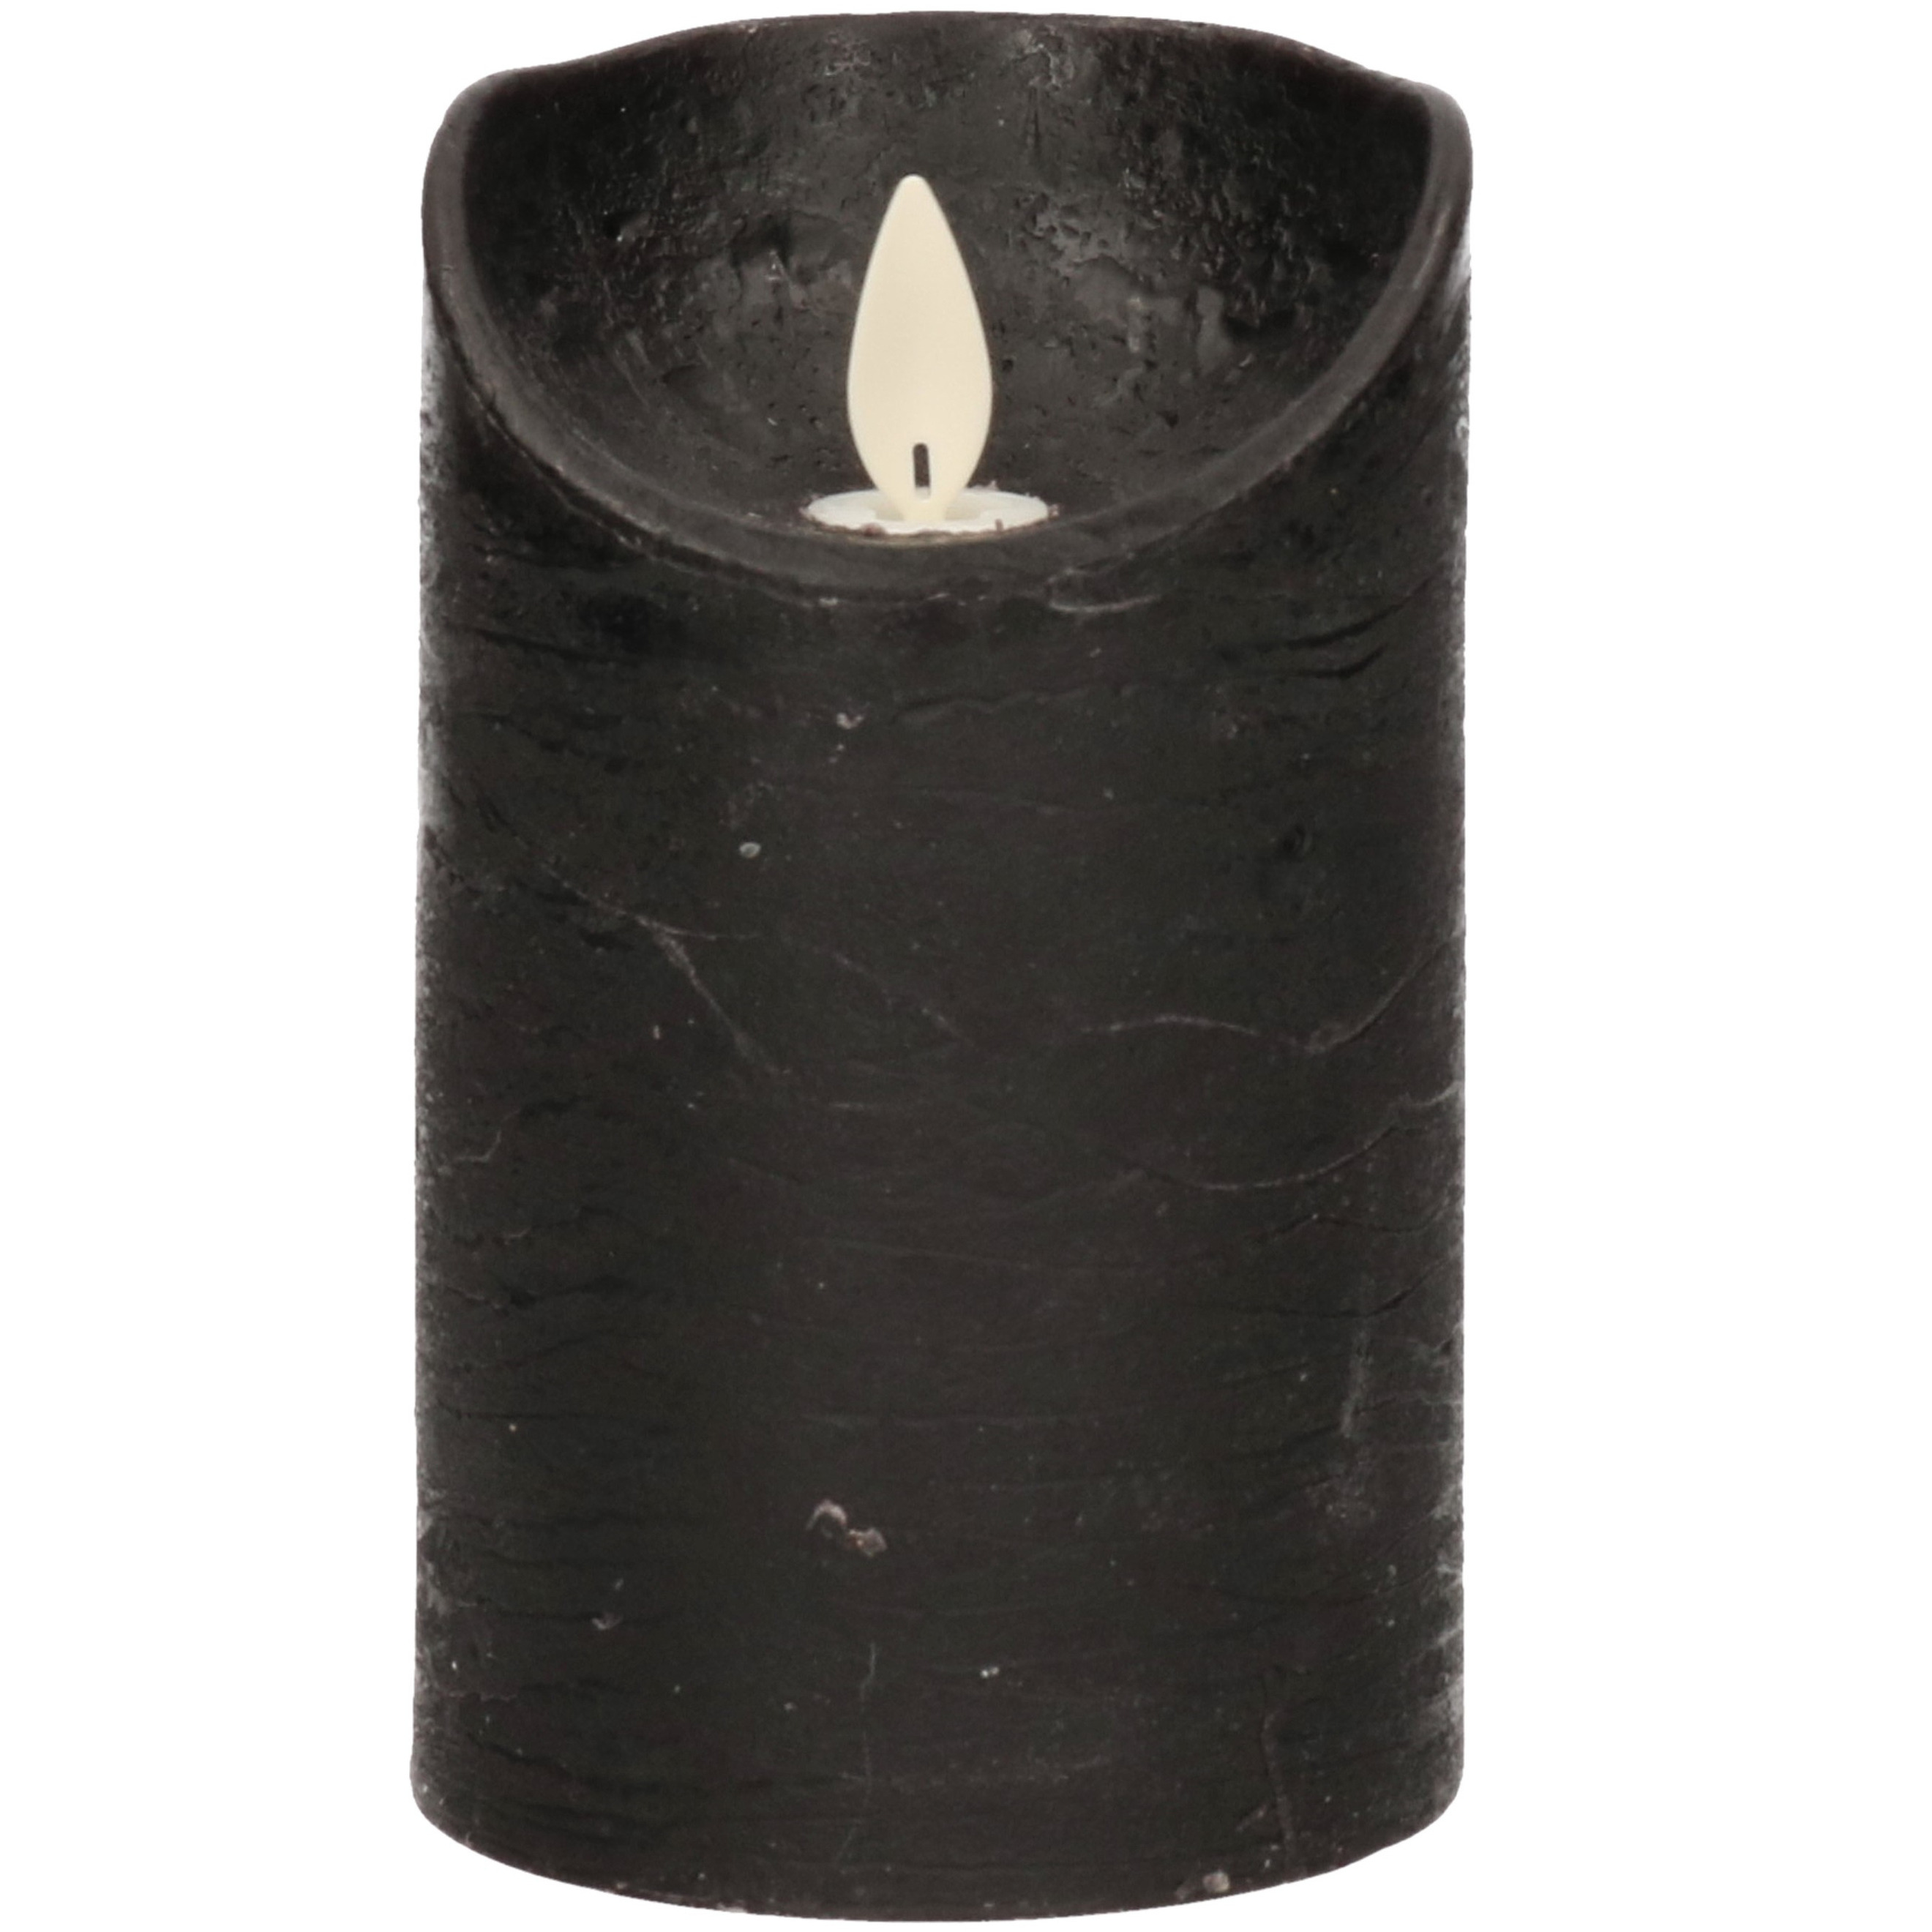 1x Zwarte LED kaarsen / stompkaarsen met bewegende vlam 12,5 cm